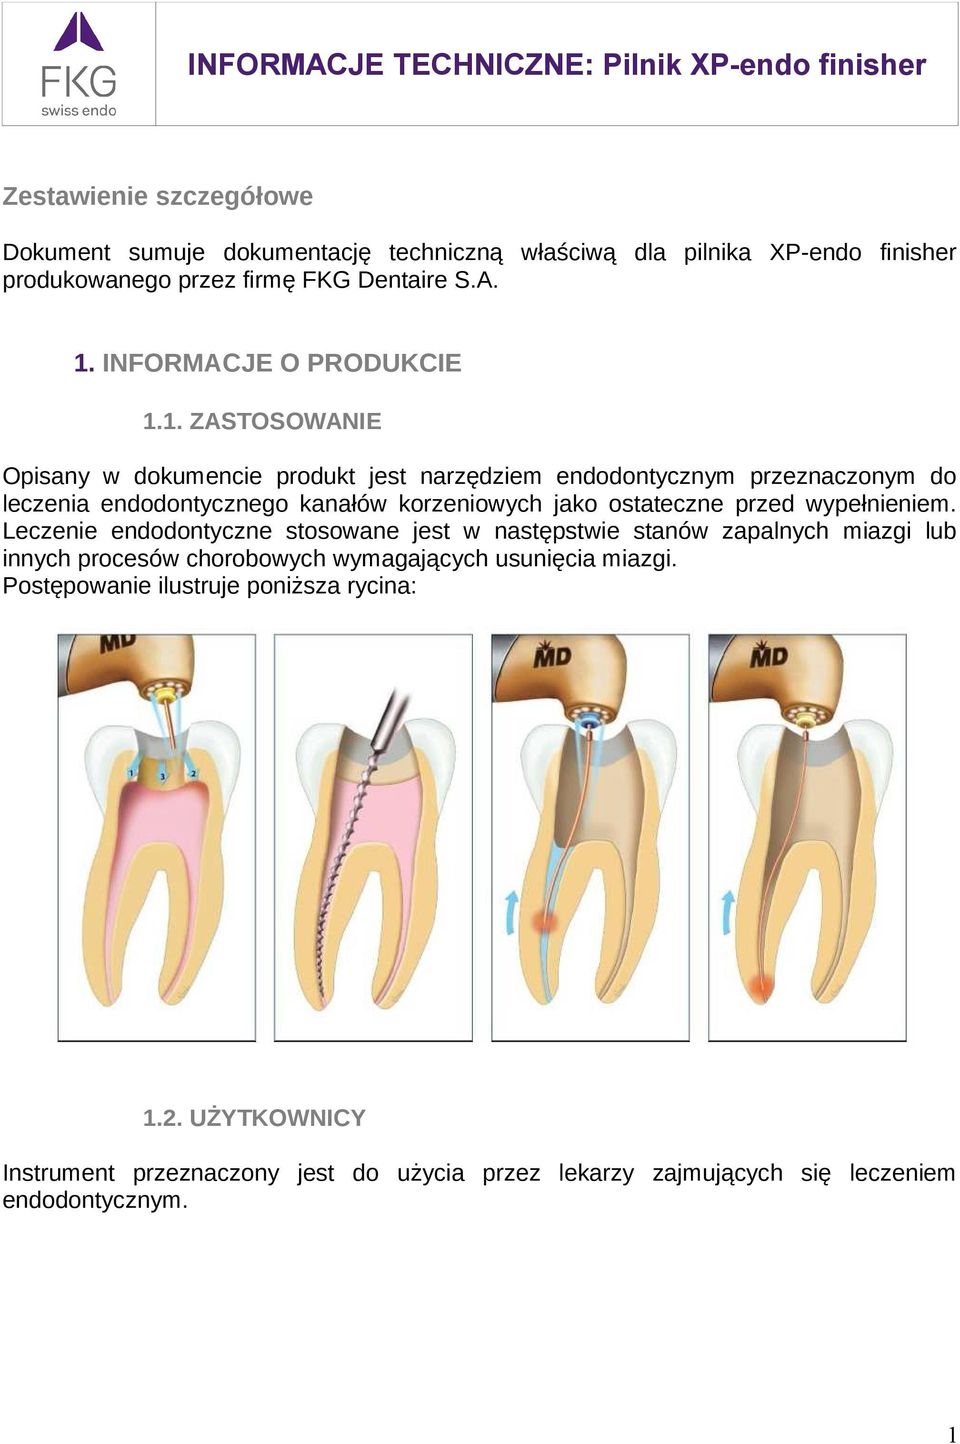 1. ZASTOSOWANIE Opisany w dokumencie produkt jest narzędziem endodontycznym przeznaczonym do leczenia endodontycznego kanałów korzeniowych jako ostateczne przed